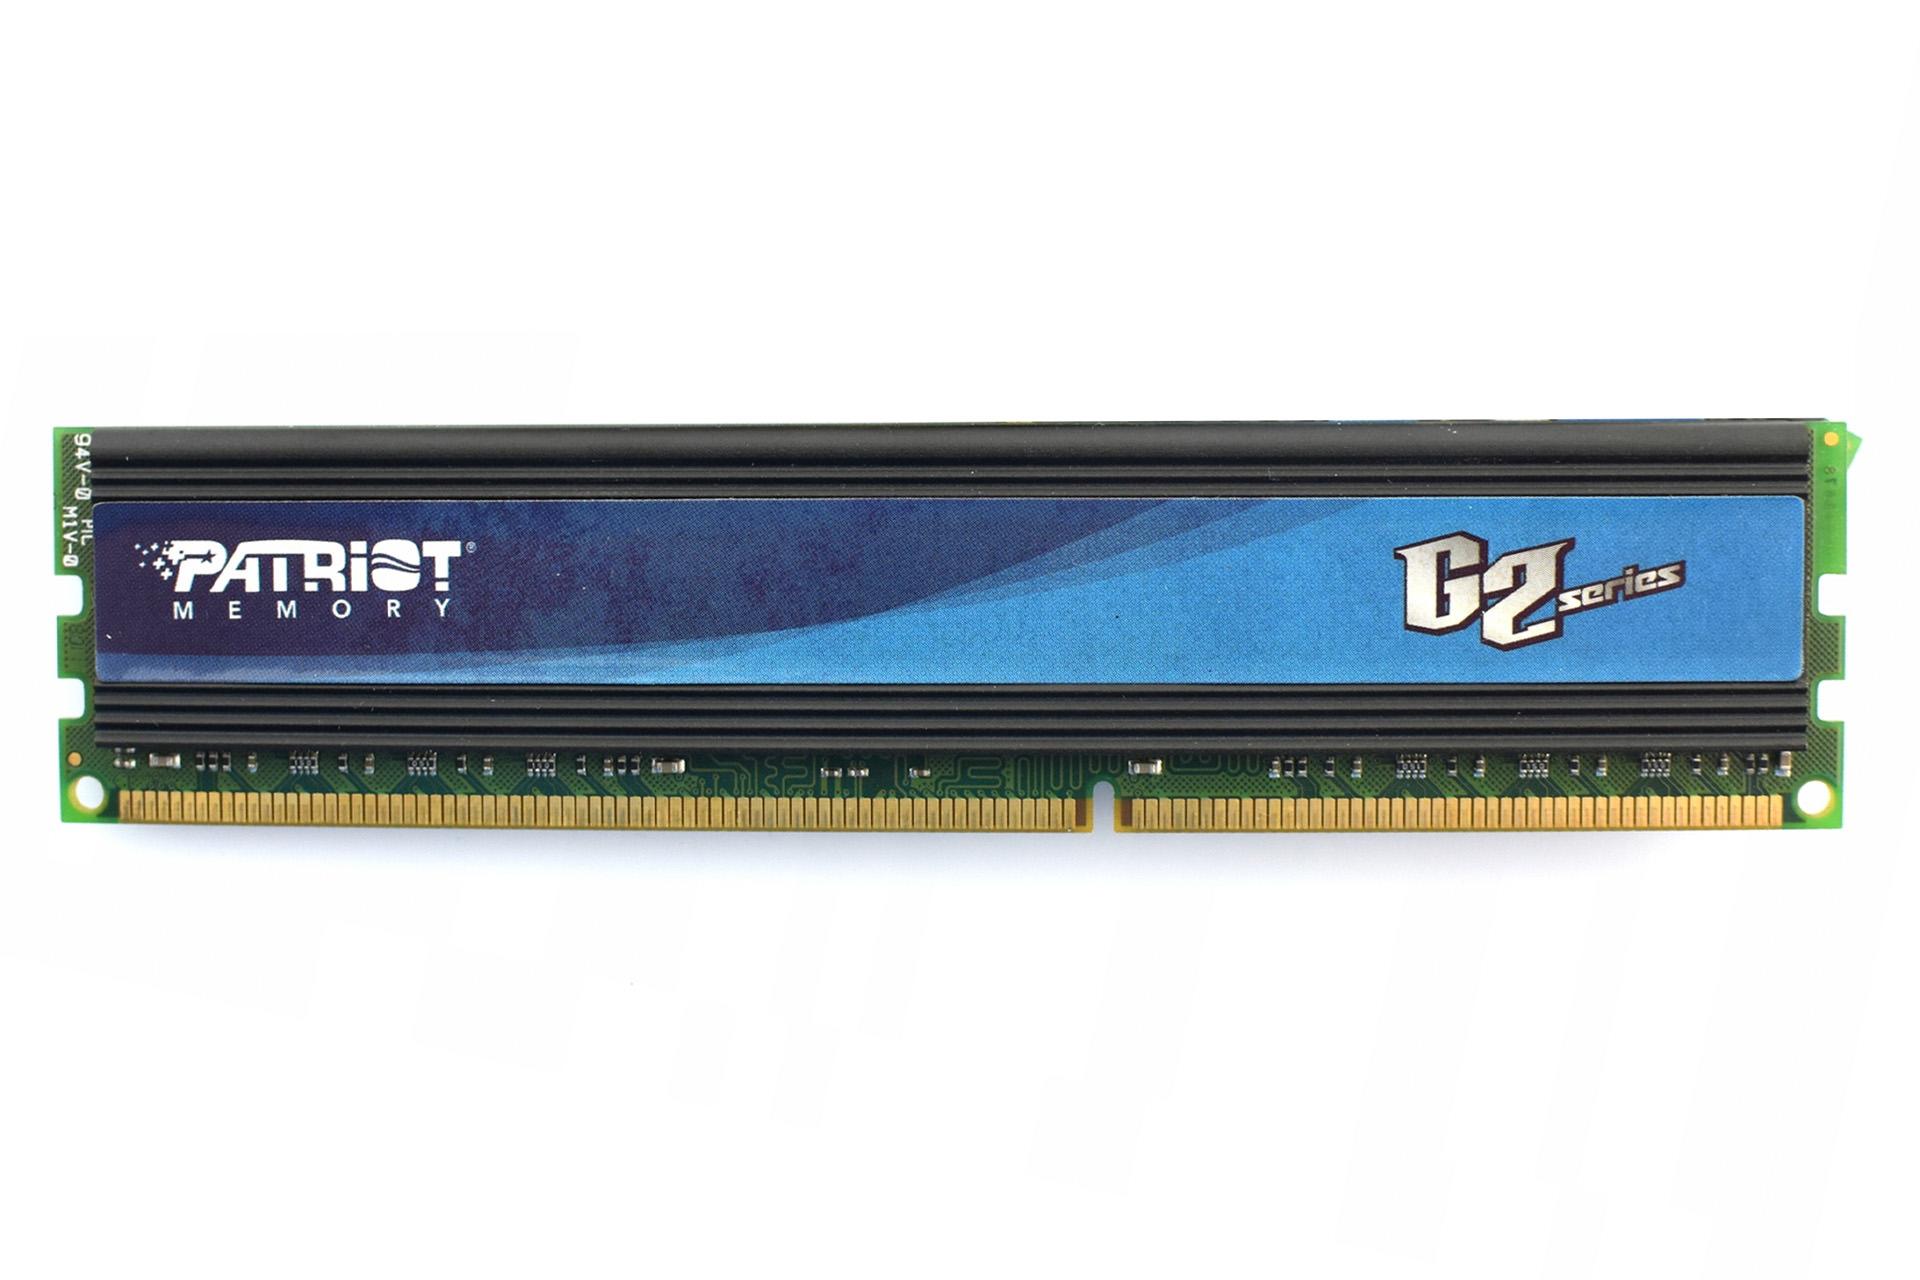 حافظه رم پاتریوت G2 ظرفیت 4 گیگابایت از نوع DDR3-1333